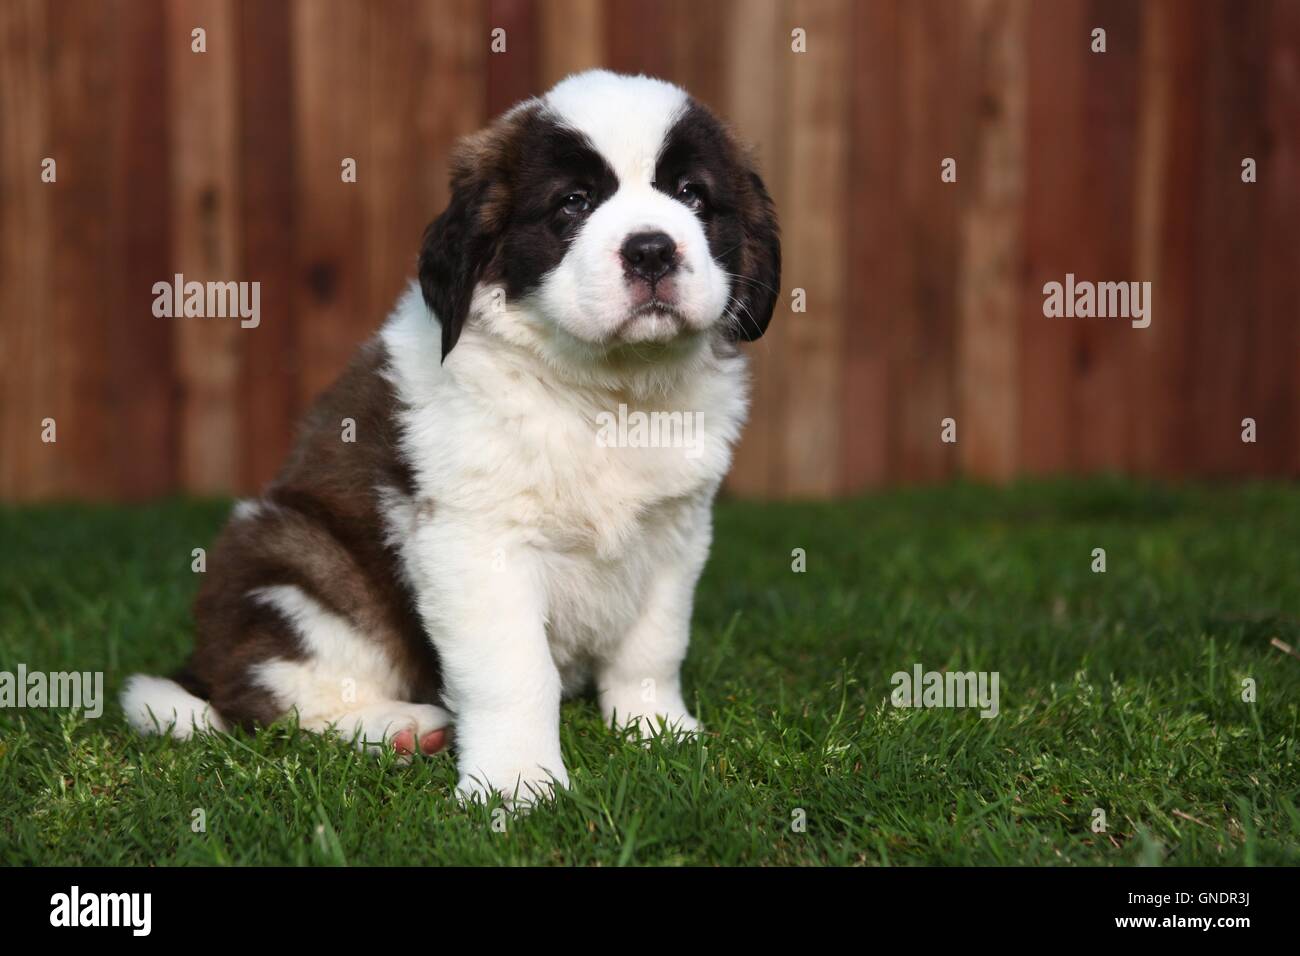 San bernardo raza de perro fotografías e imágenes de alta resolución -  Página 2 - Alamy